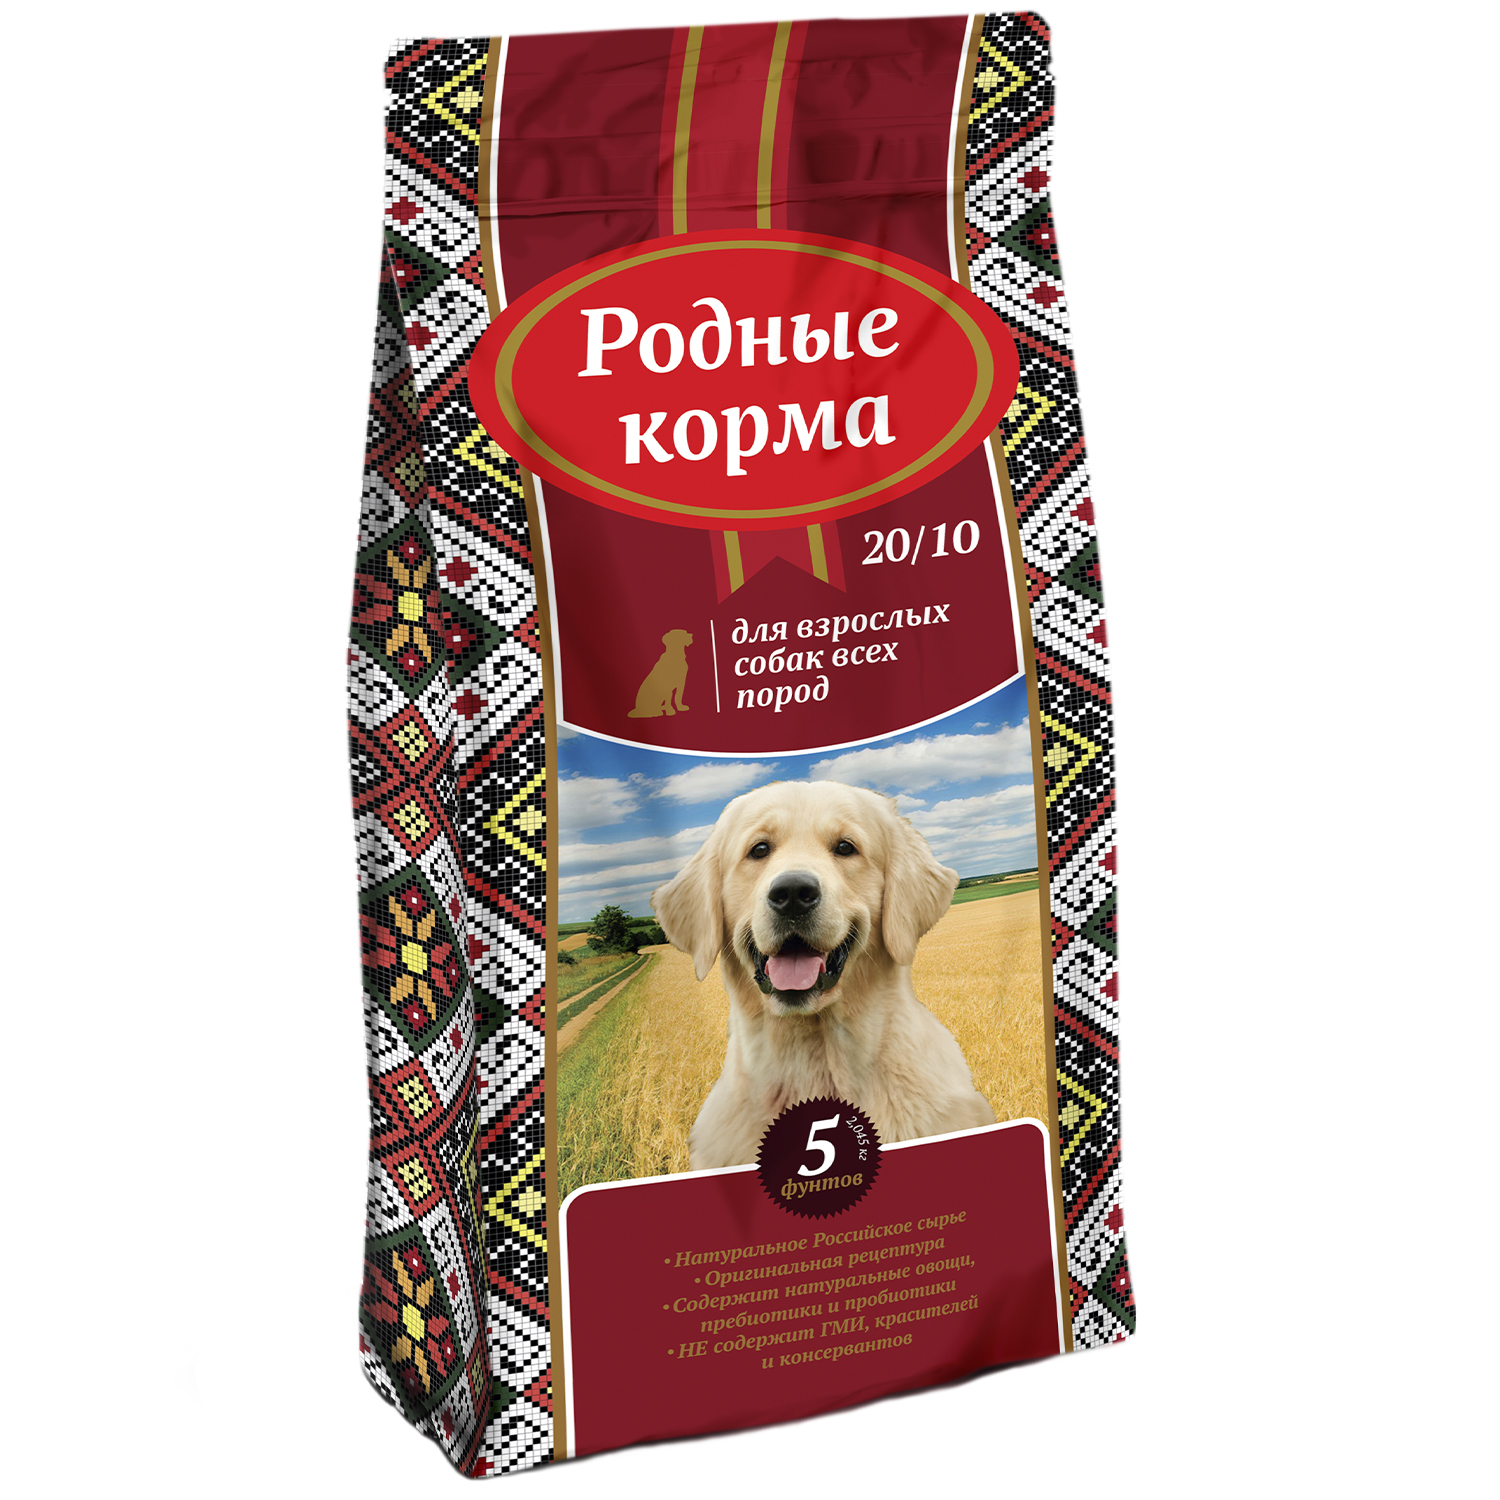 Купить корм для собаки красноярск